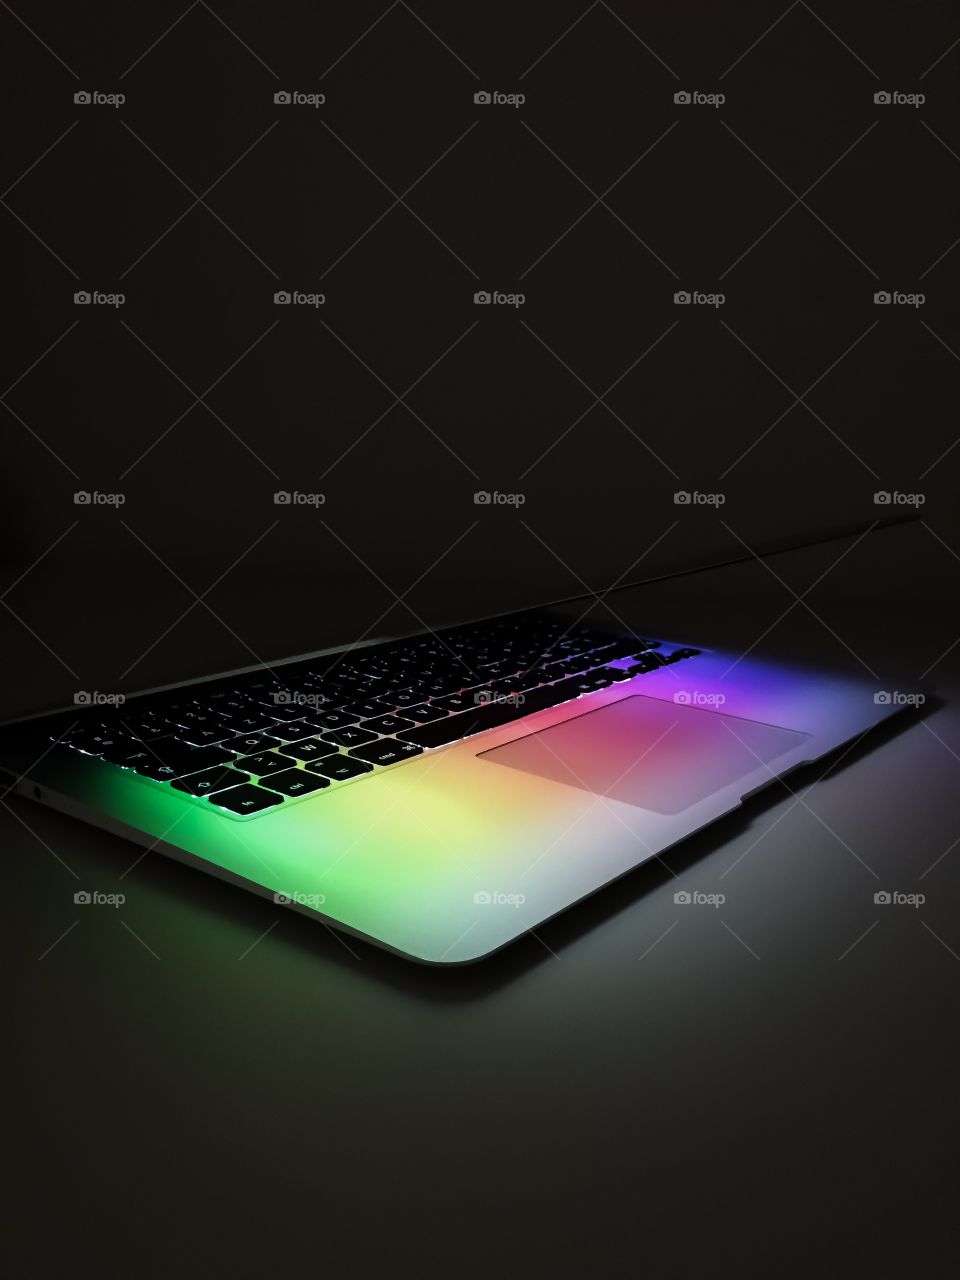 Colourful MacBook